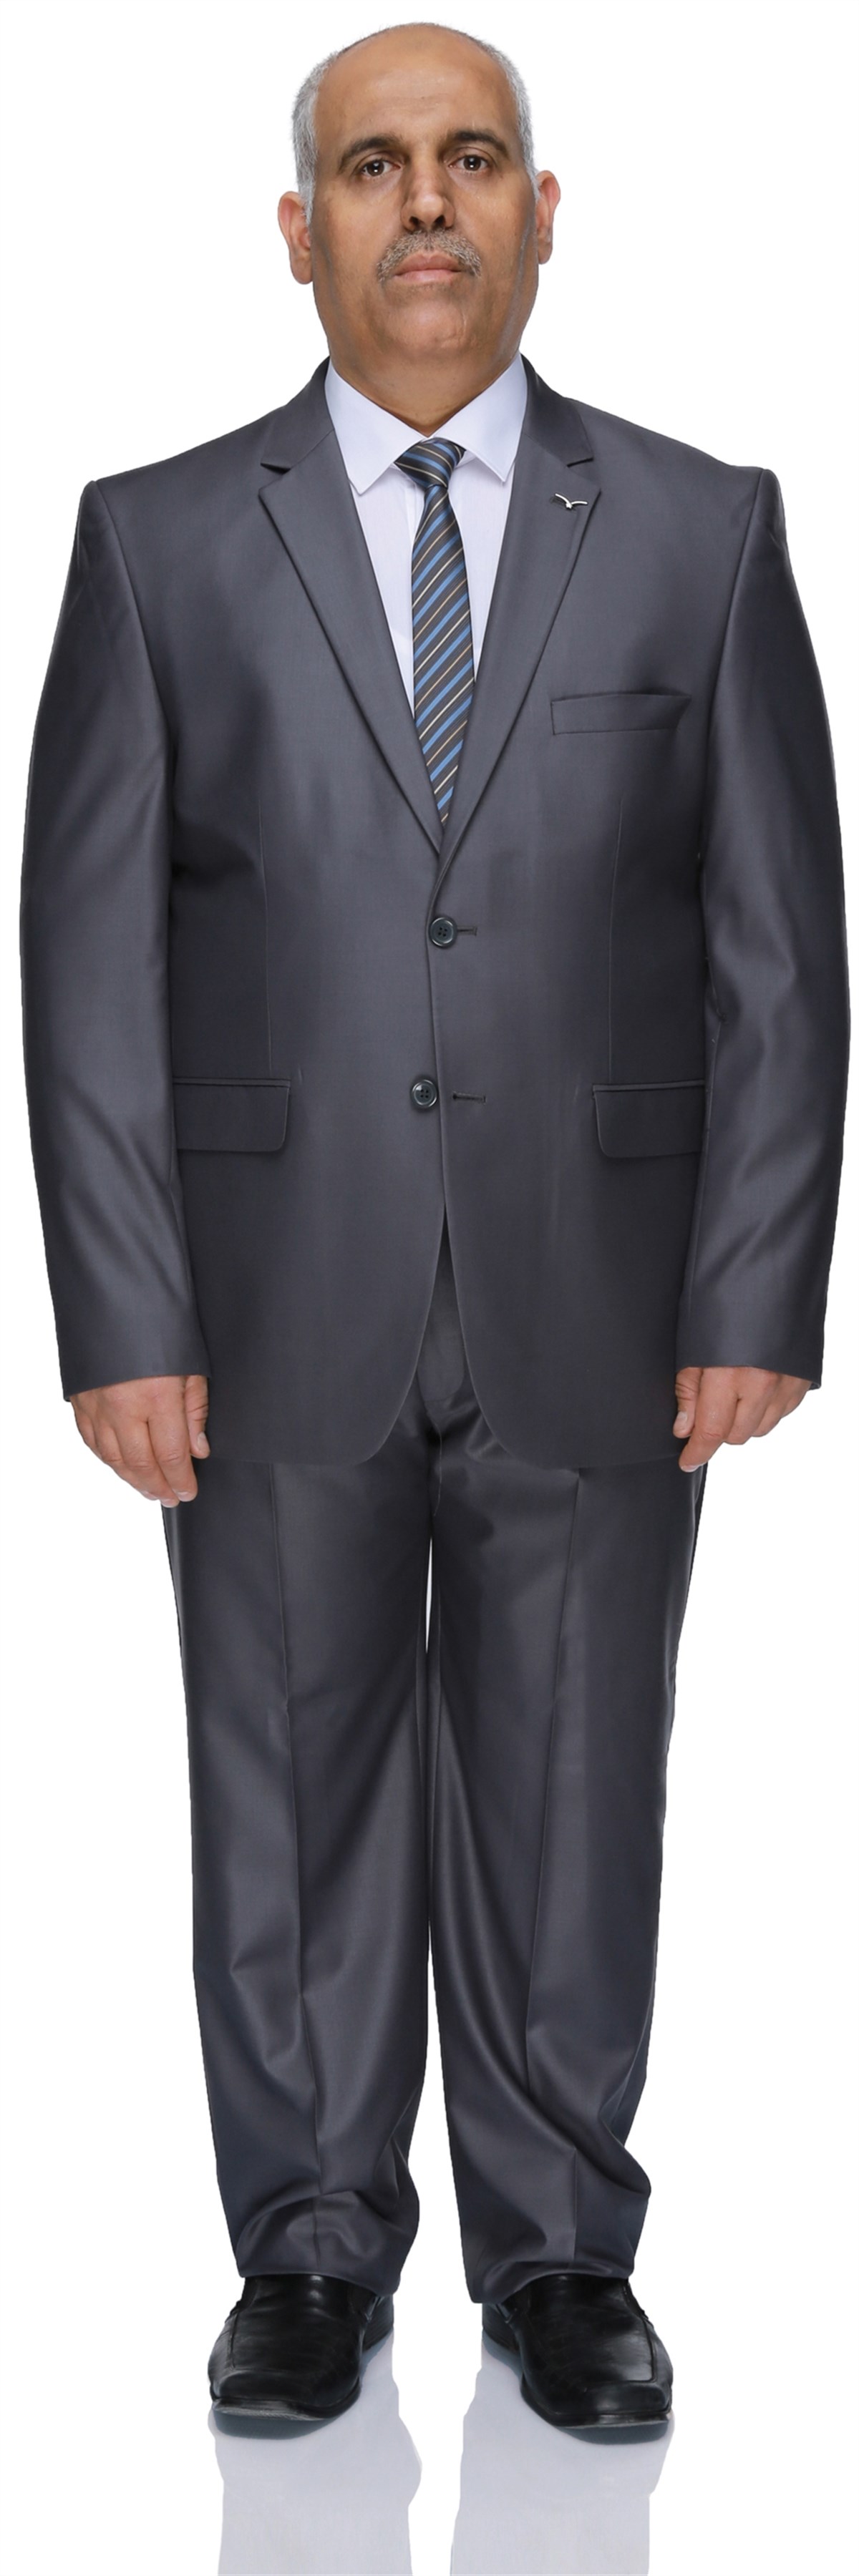 Buenza 120S Büyük Beden Erkek Takım Elbise-Koyu Gri